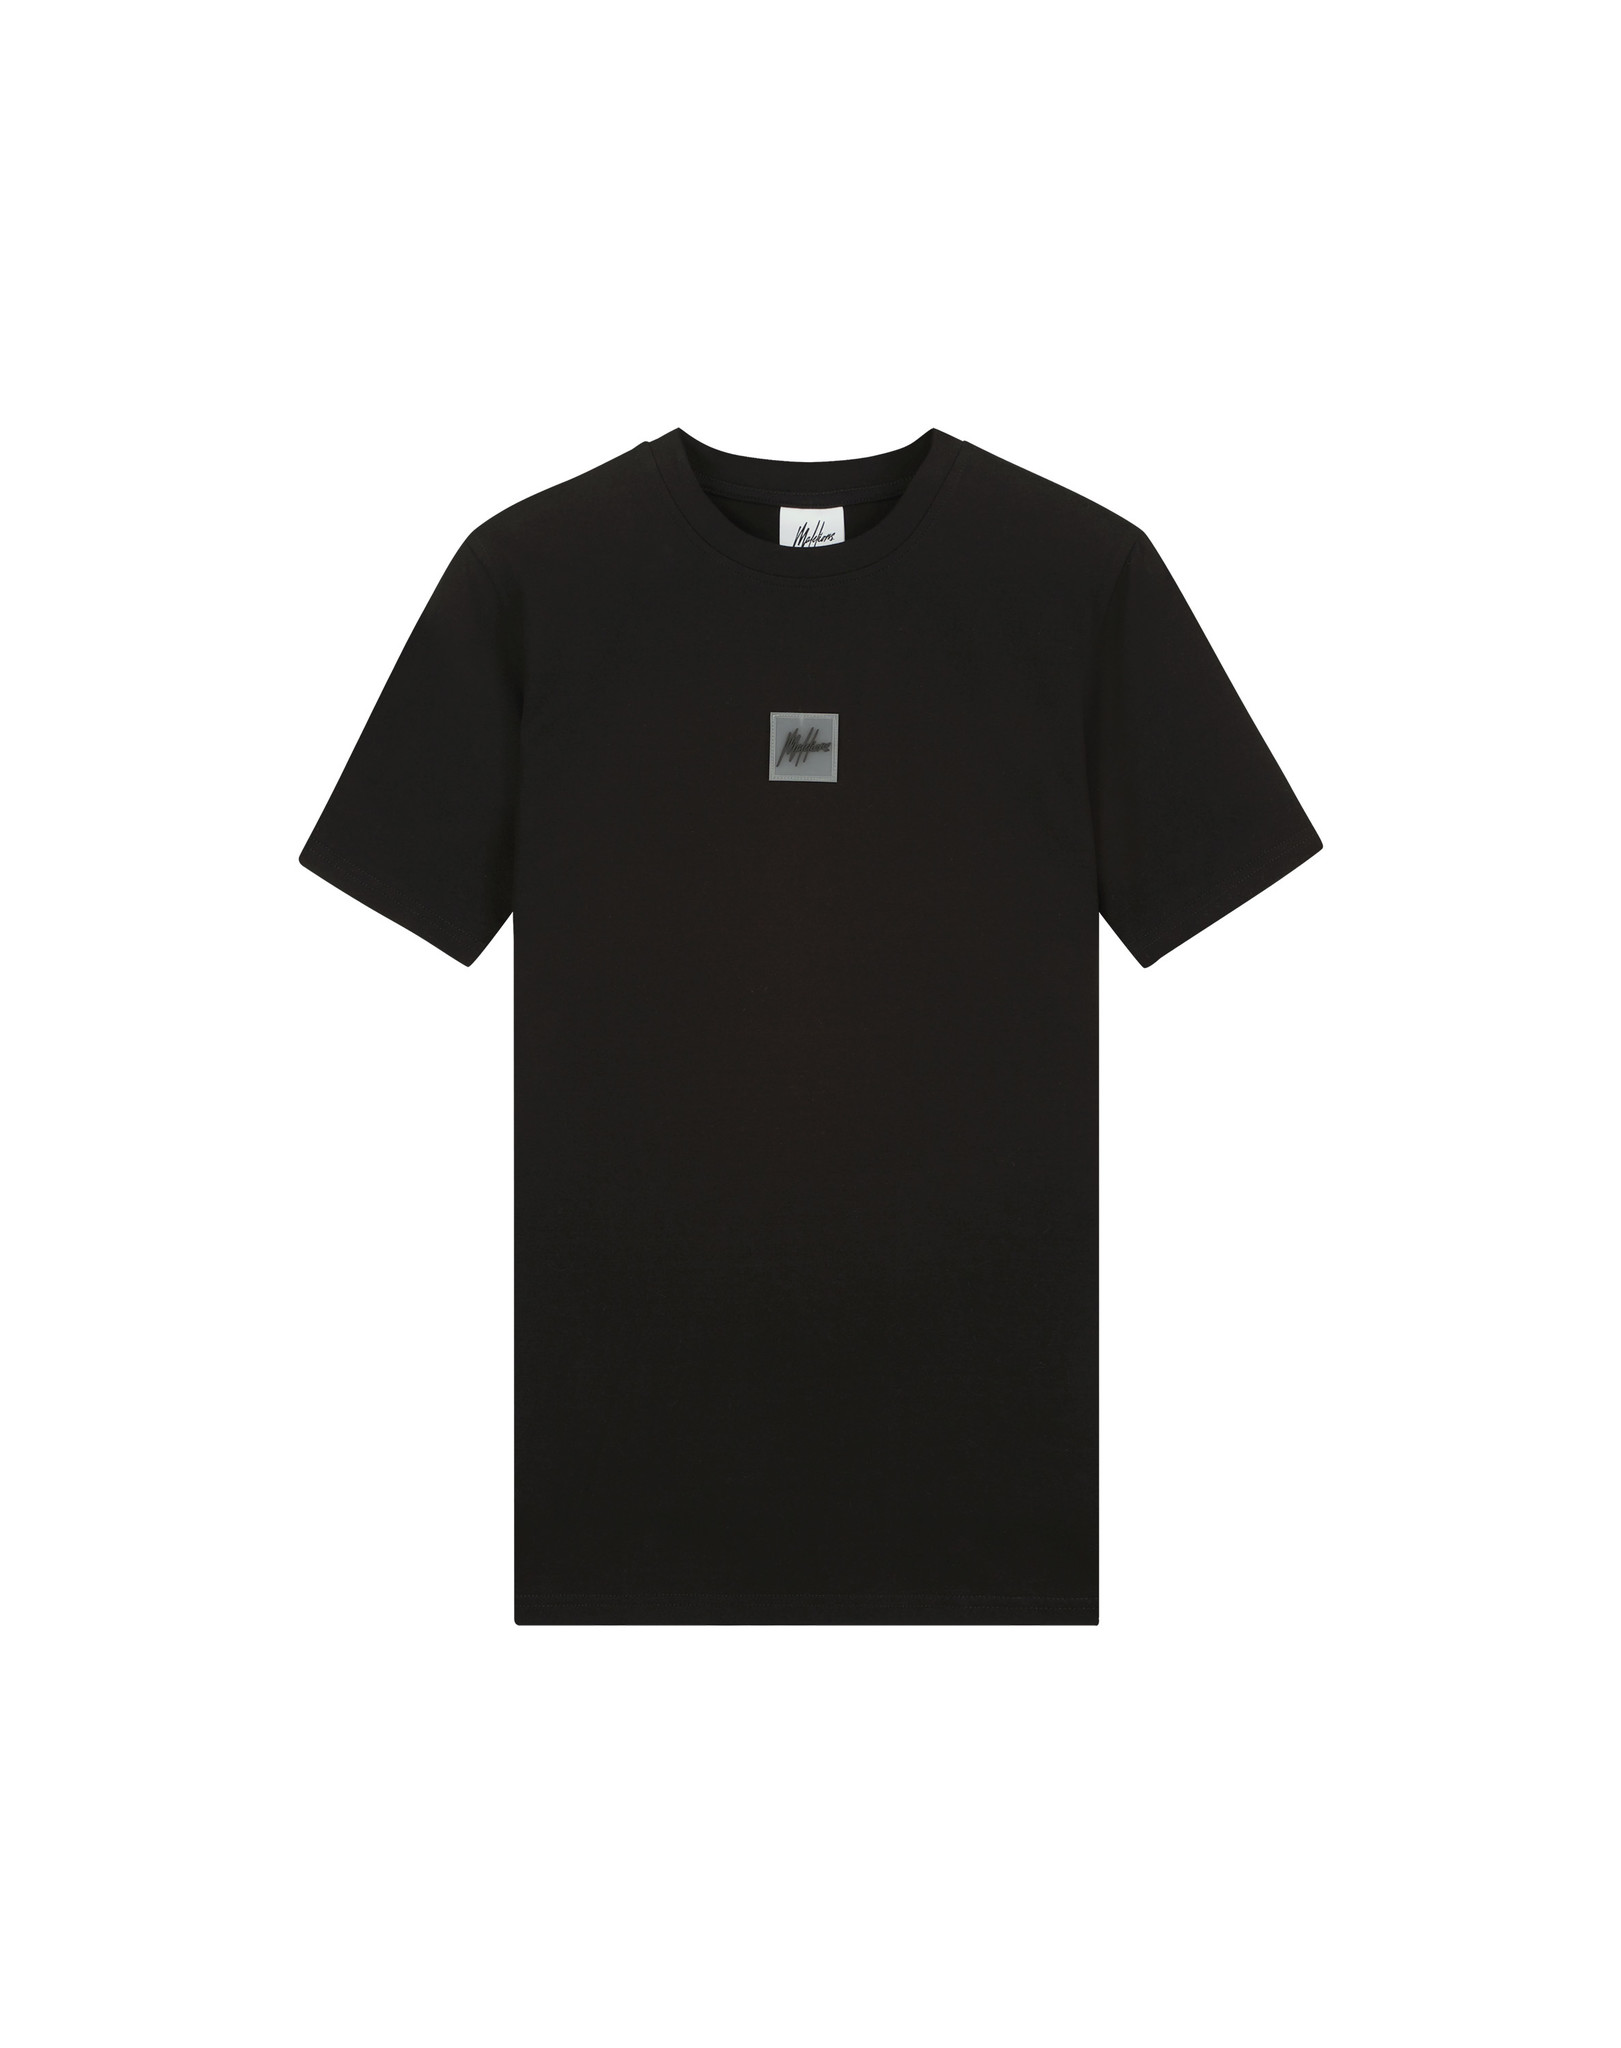 Malelions Women Amy T-Shirt - Black product